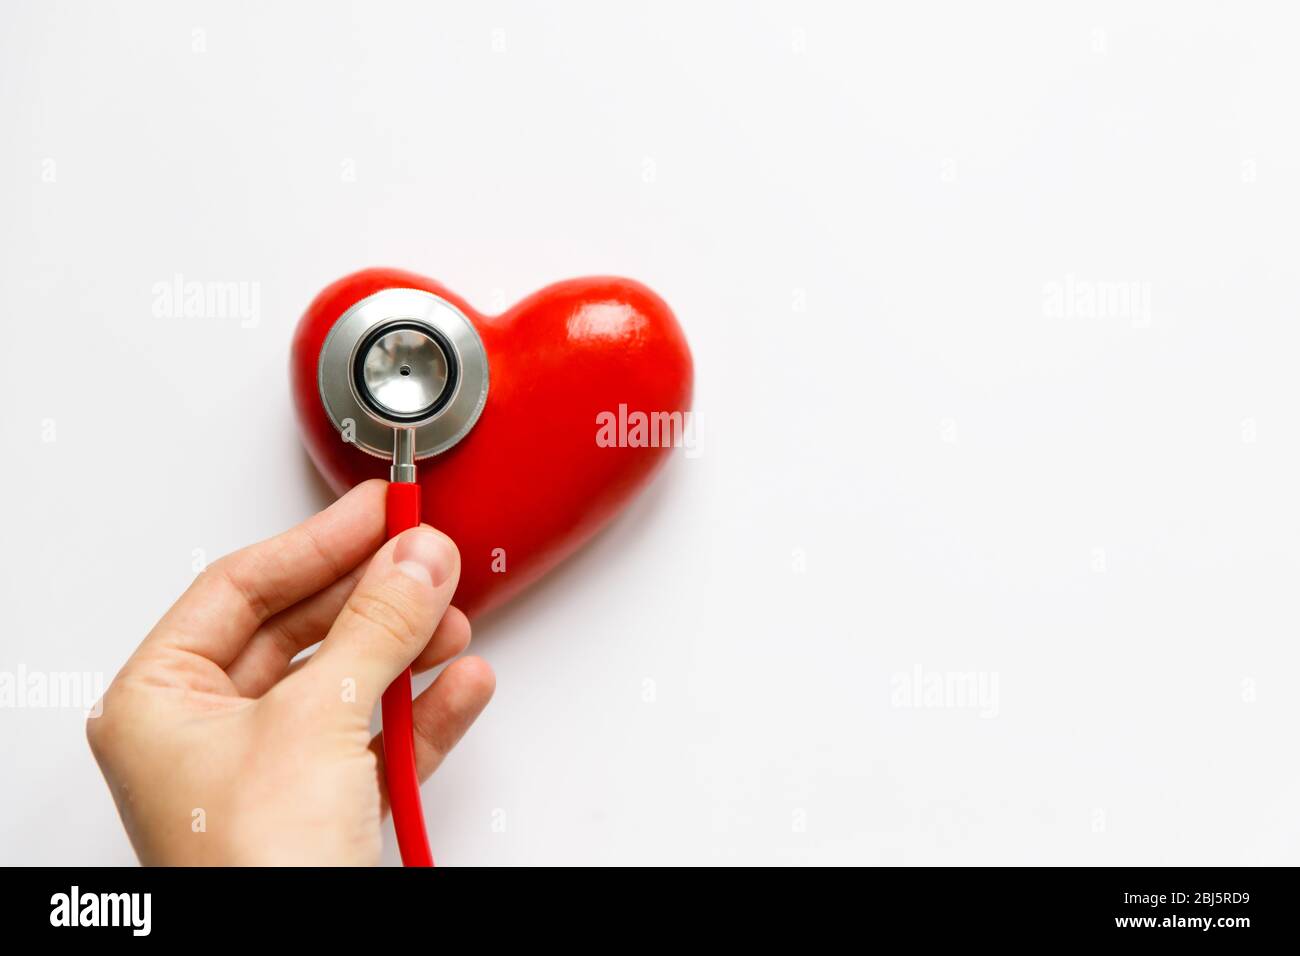 Nahaufnahme der Hand des Menschen, die ein rotes Stethoskop am Herzen hält - medizinisches Diagnosegerät für Auskultation (Hören) von Klängen, die vom Herzen kommen, bronc Stockfoto